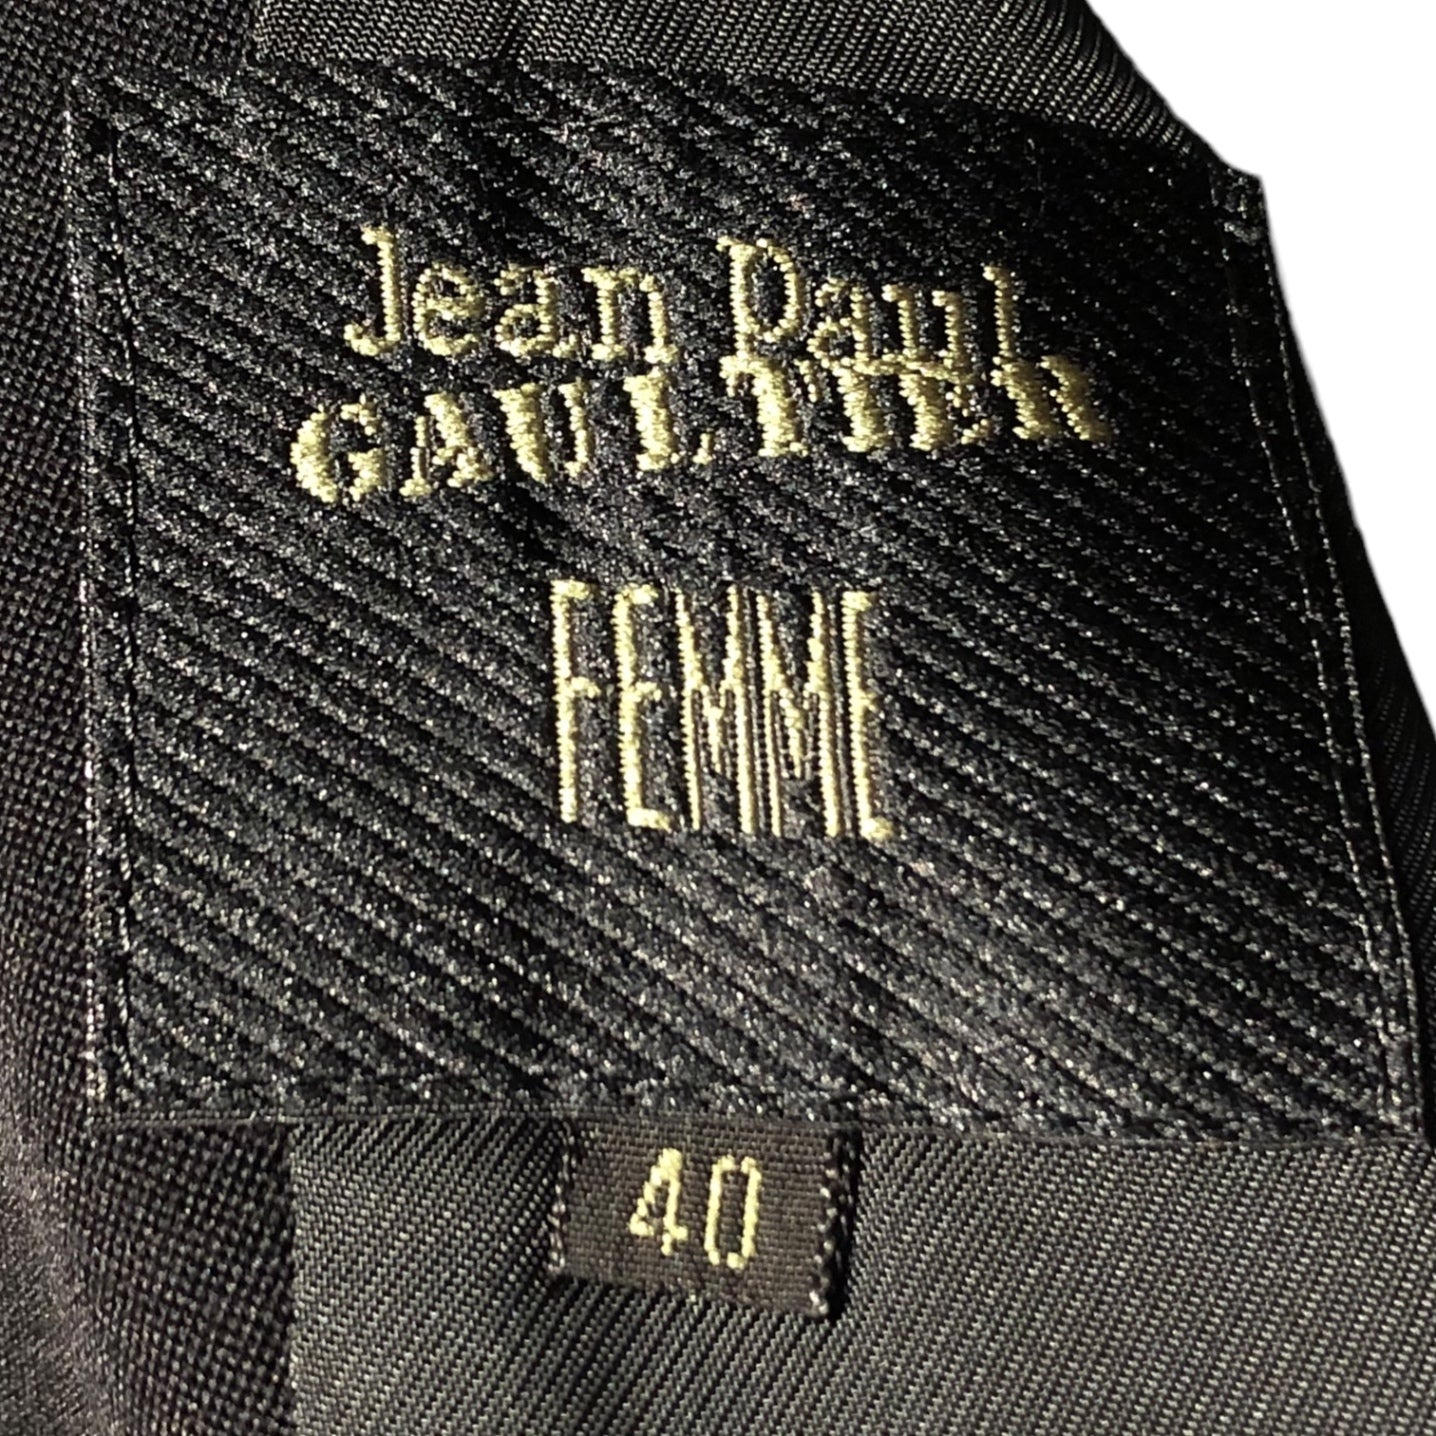 Jean Paul GAULTIER FEMME(ジャンポールゴルチエファム) 90's Big lapel design double jacket setup ビッグ ラペル デザイン ダブル ジャケット セットアップ 40(L程度) ブラック スーツ アーカイブ